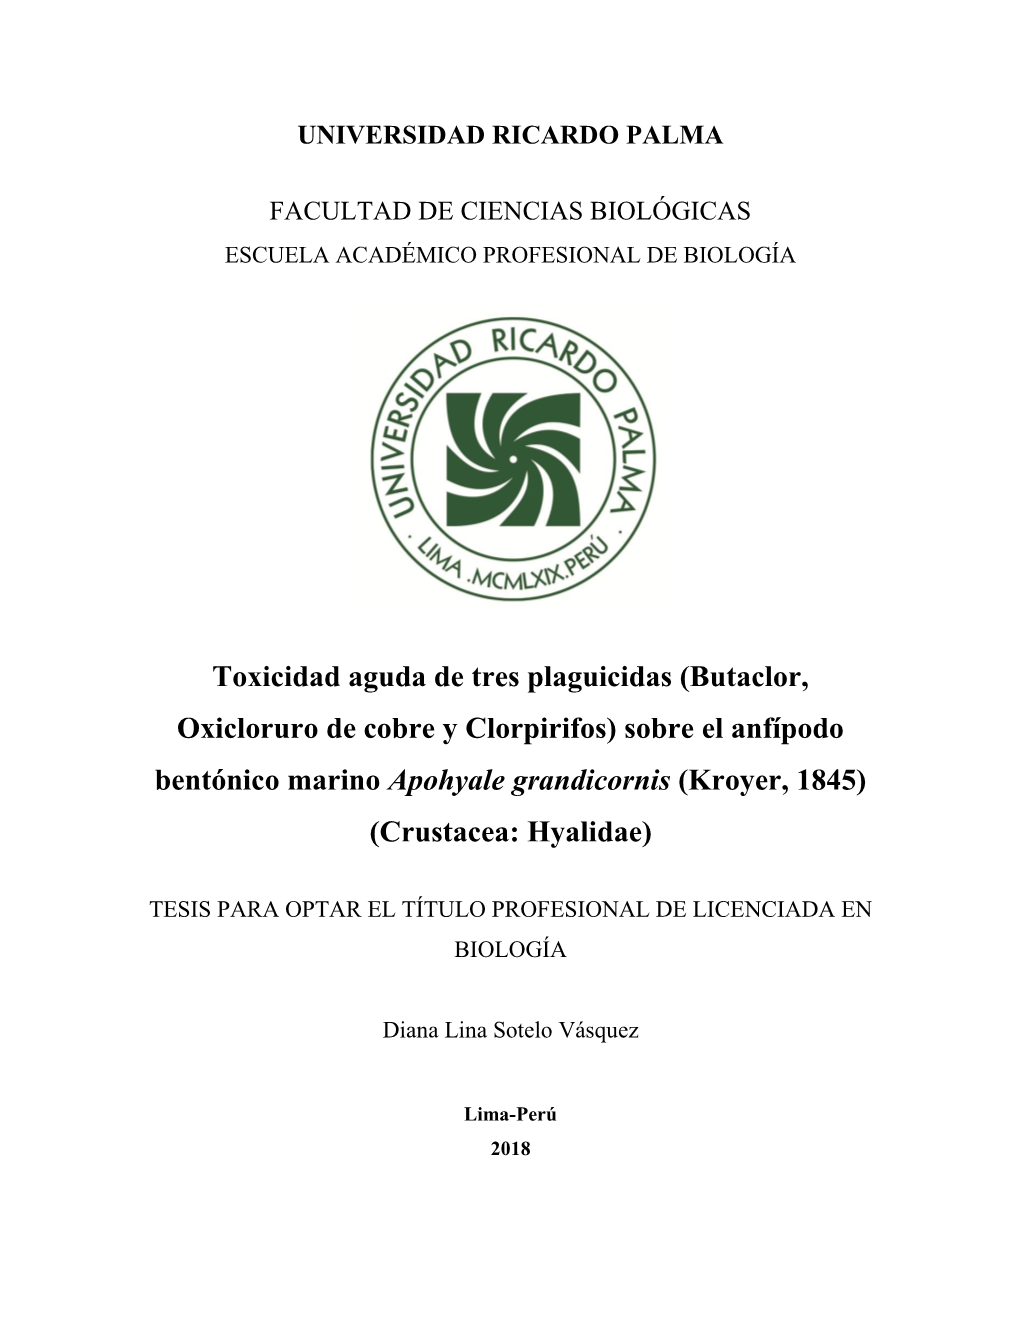 Butaclor, Oxicloruro De Cobre Y Clorpirifos) Sobre El Anfípodo Bentónico Marino Apohyale Grandicornis (Kroyer, 1845) (Crustacea: Hyalidae)